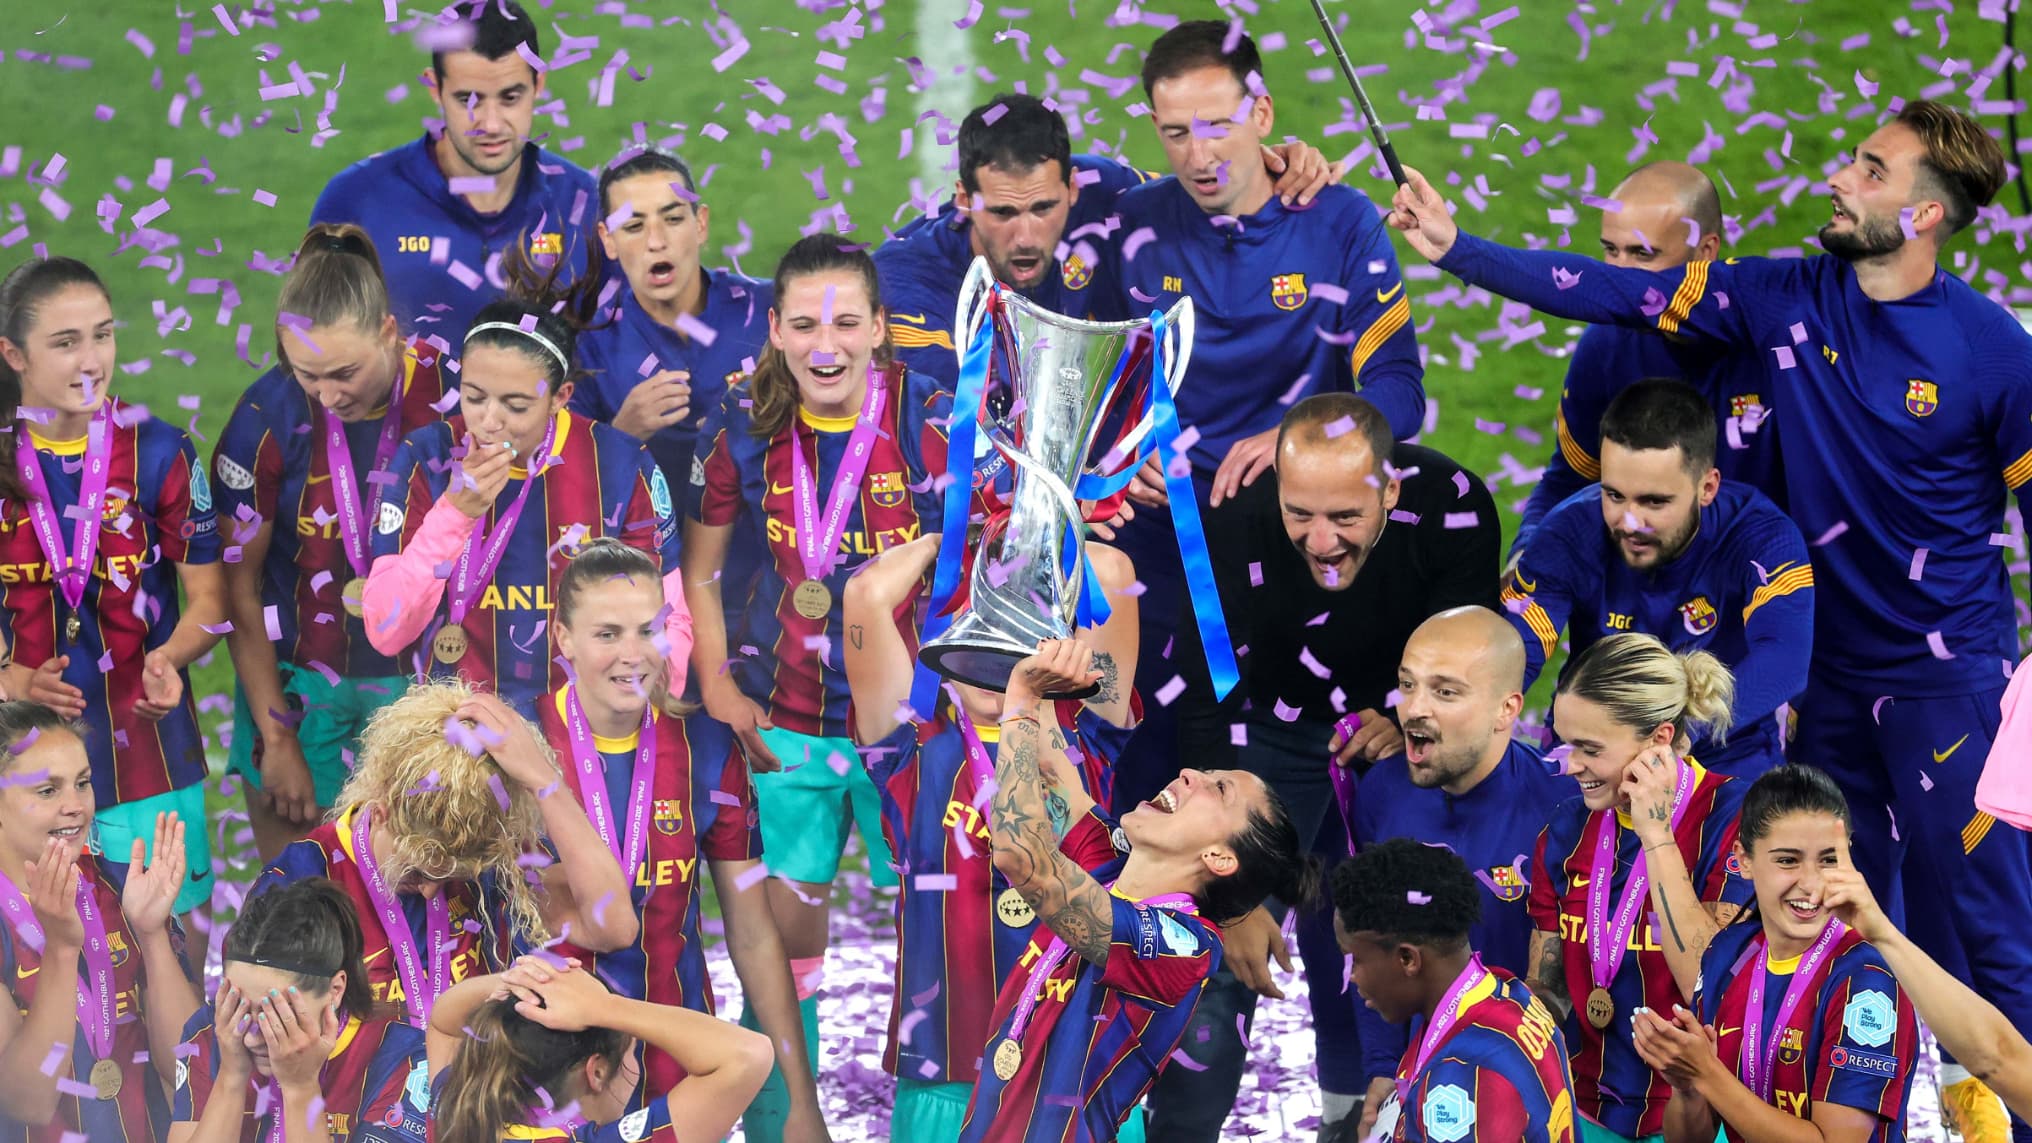 Le trophée de la Ligue des champions féminine, UEFA Women's